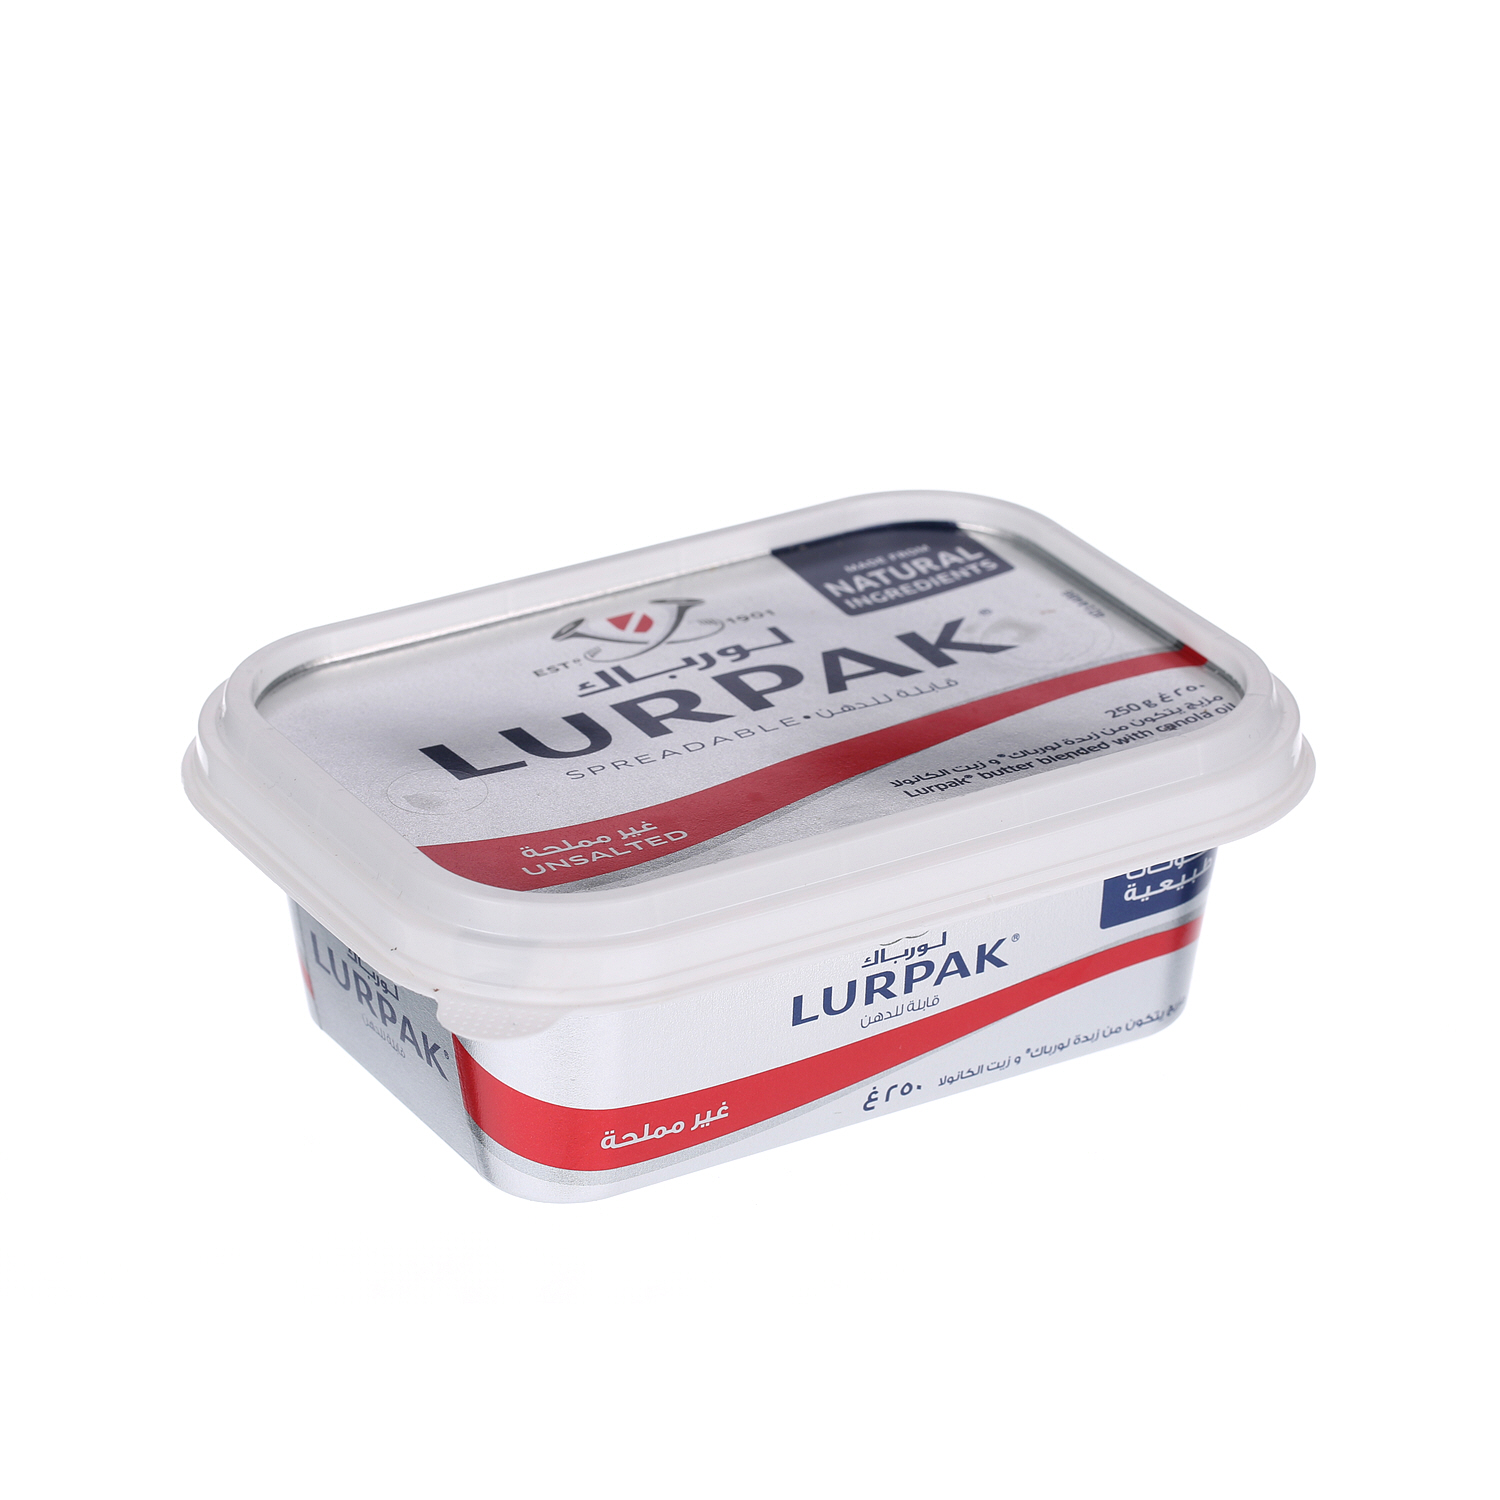 Lurpak Butter Spreadable Unsalted 250gm